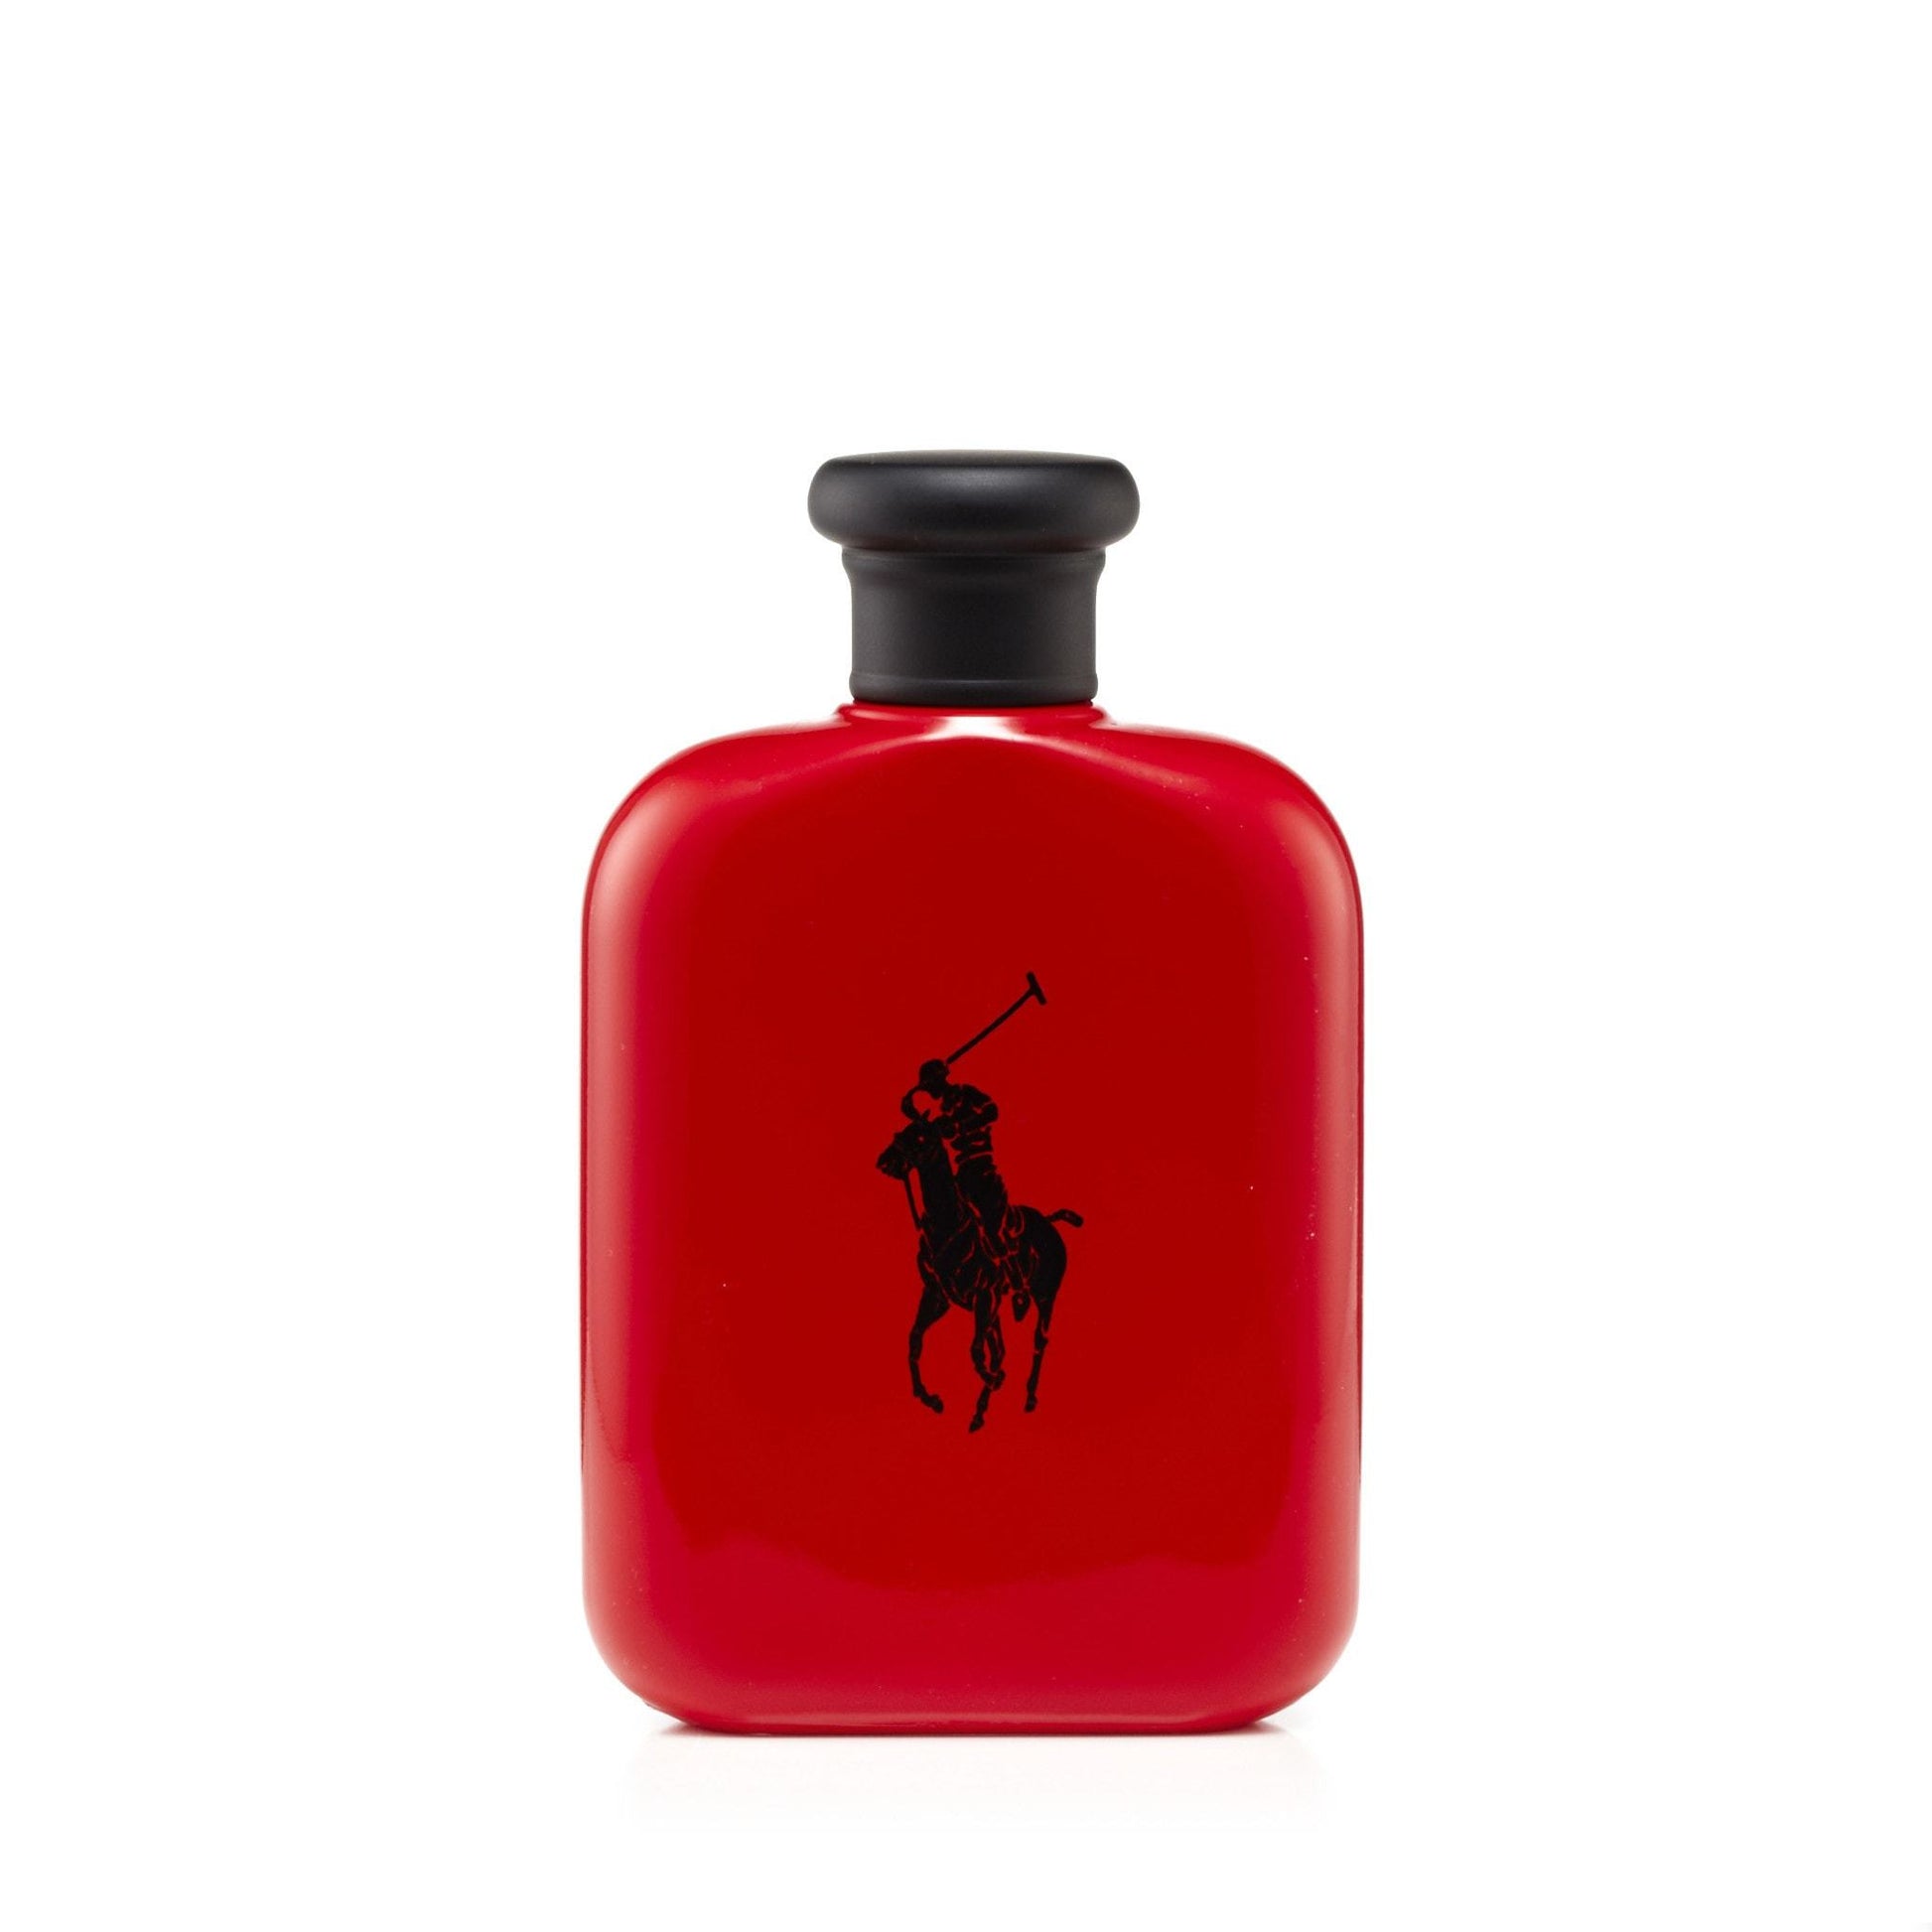 Polo Red Eau de Toilette Spray for Men by Ralph Lauren, Product image 4